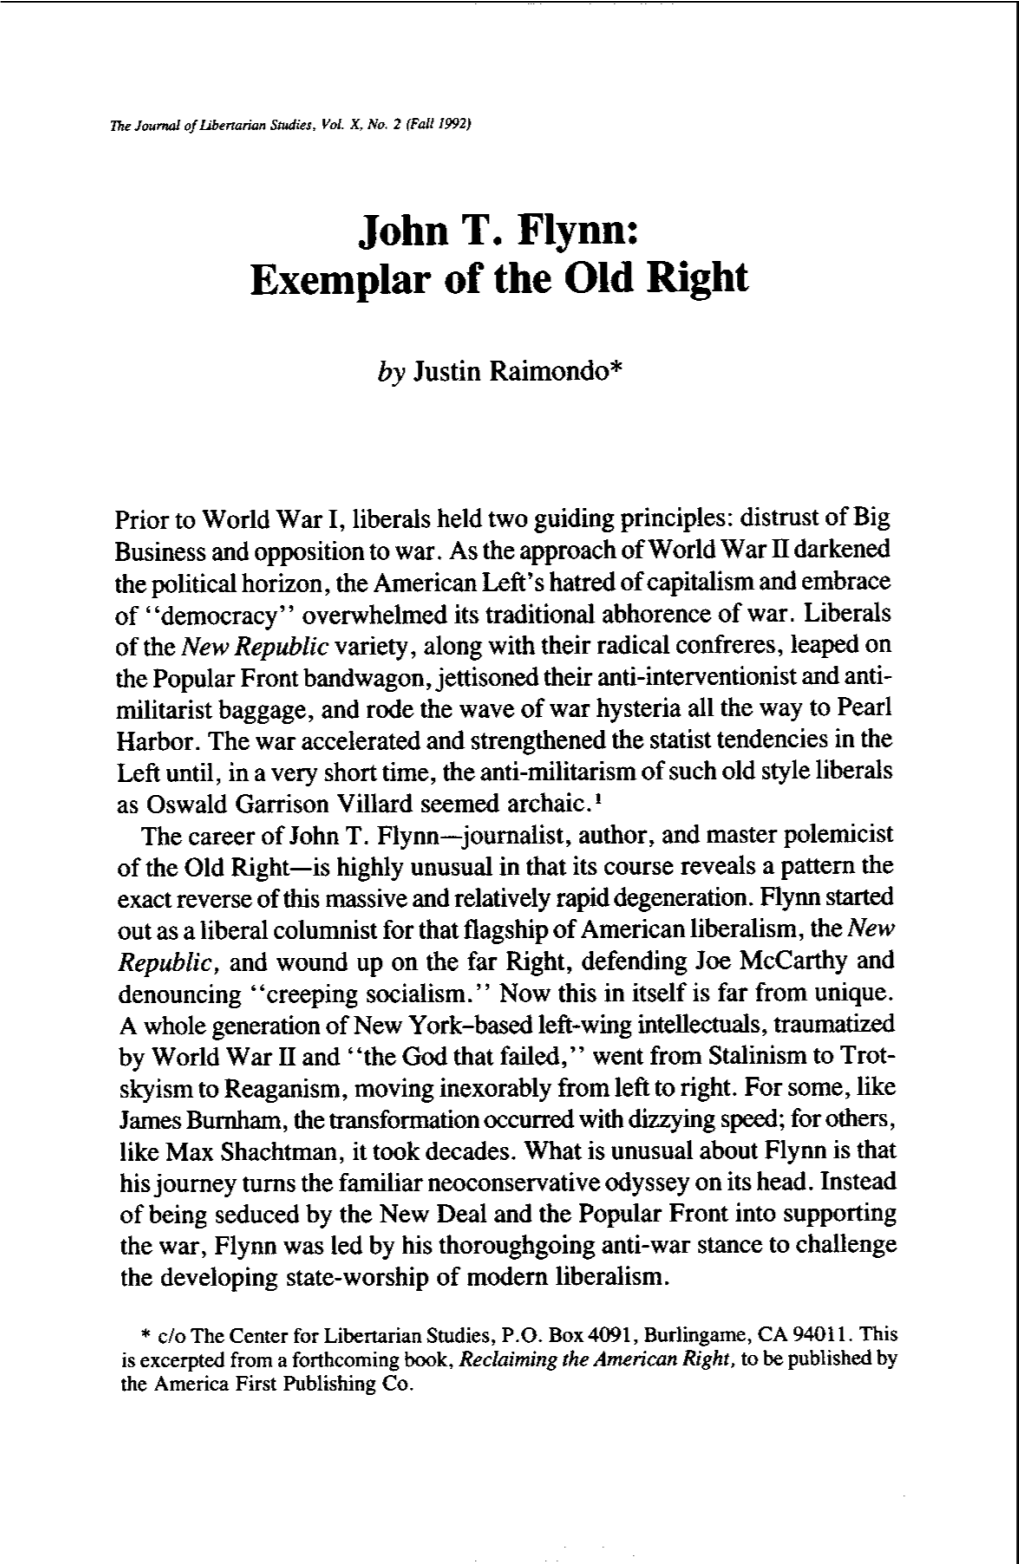 John T. Flynn: Exemplar of the Old Right